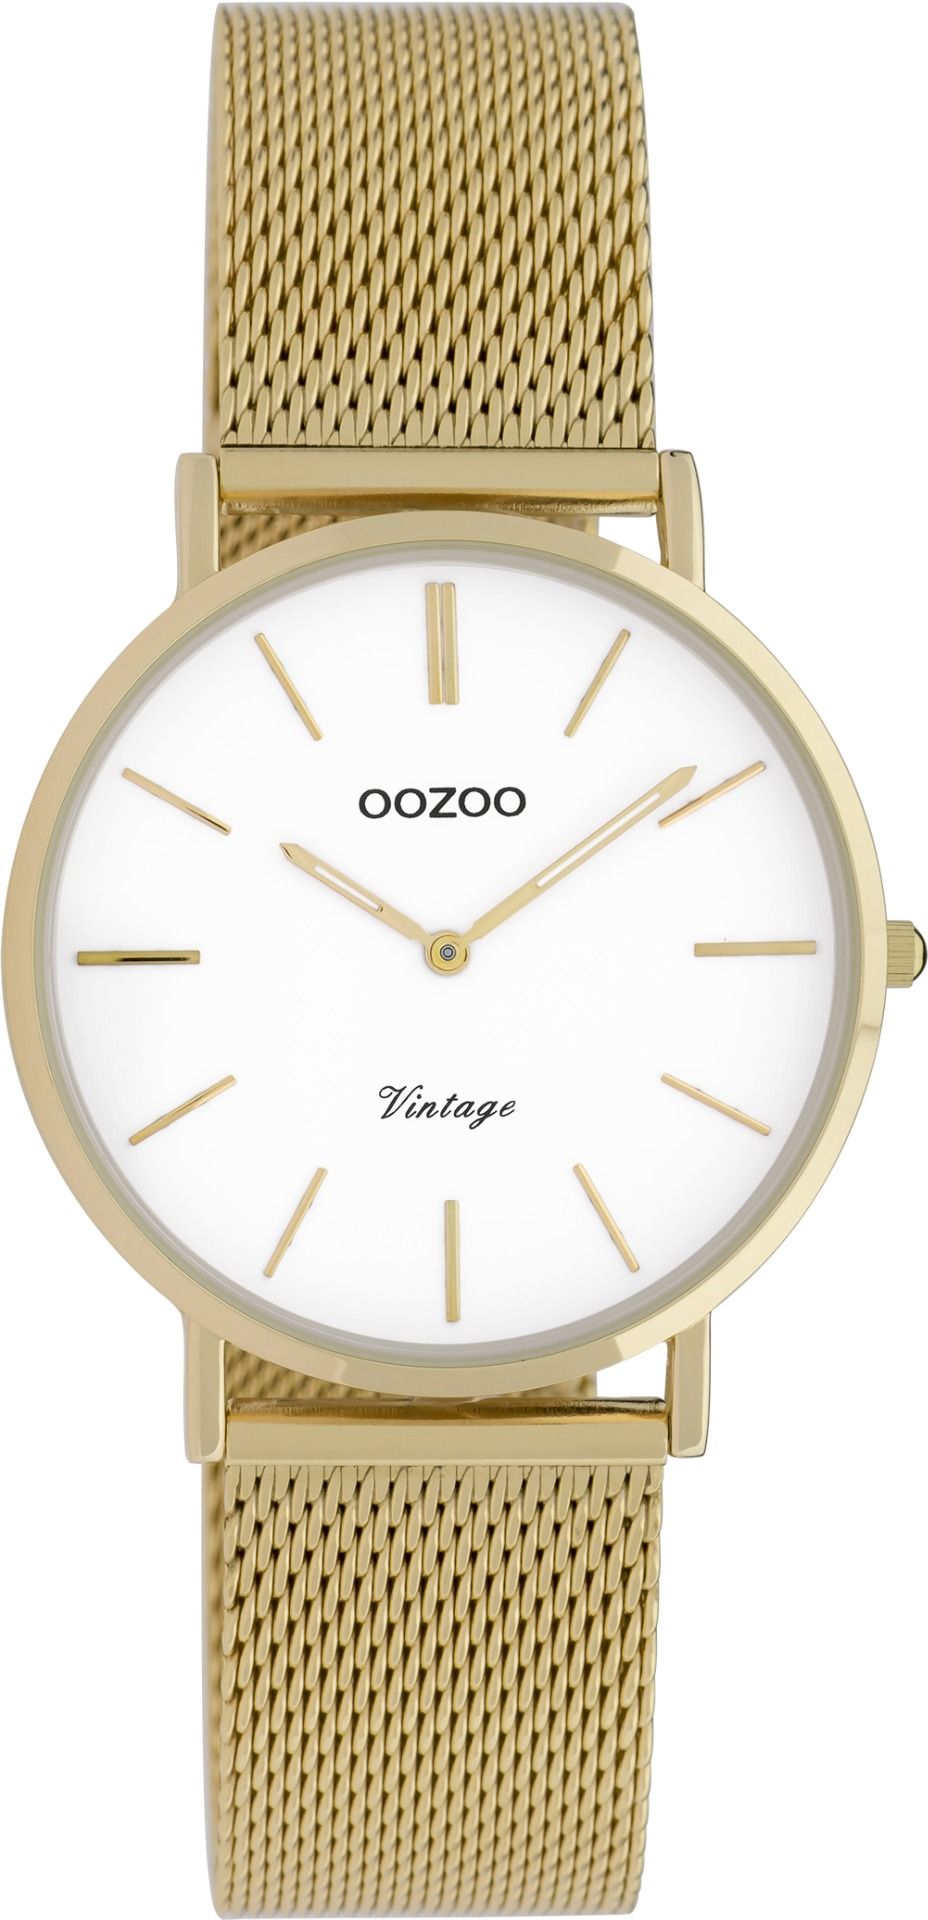 OOZOO Vintage 9911 - 32mm